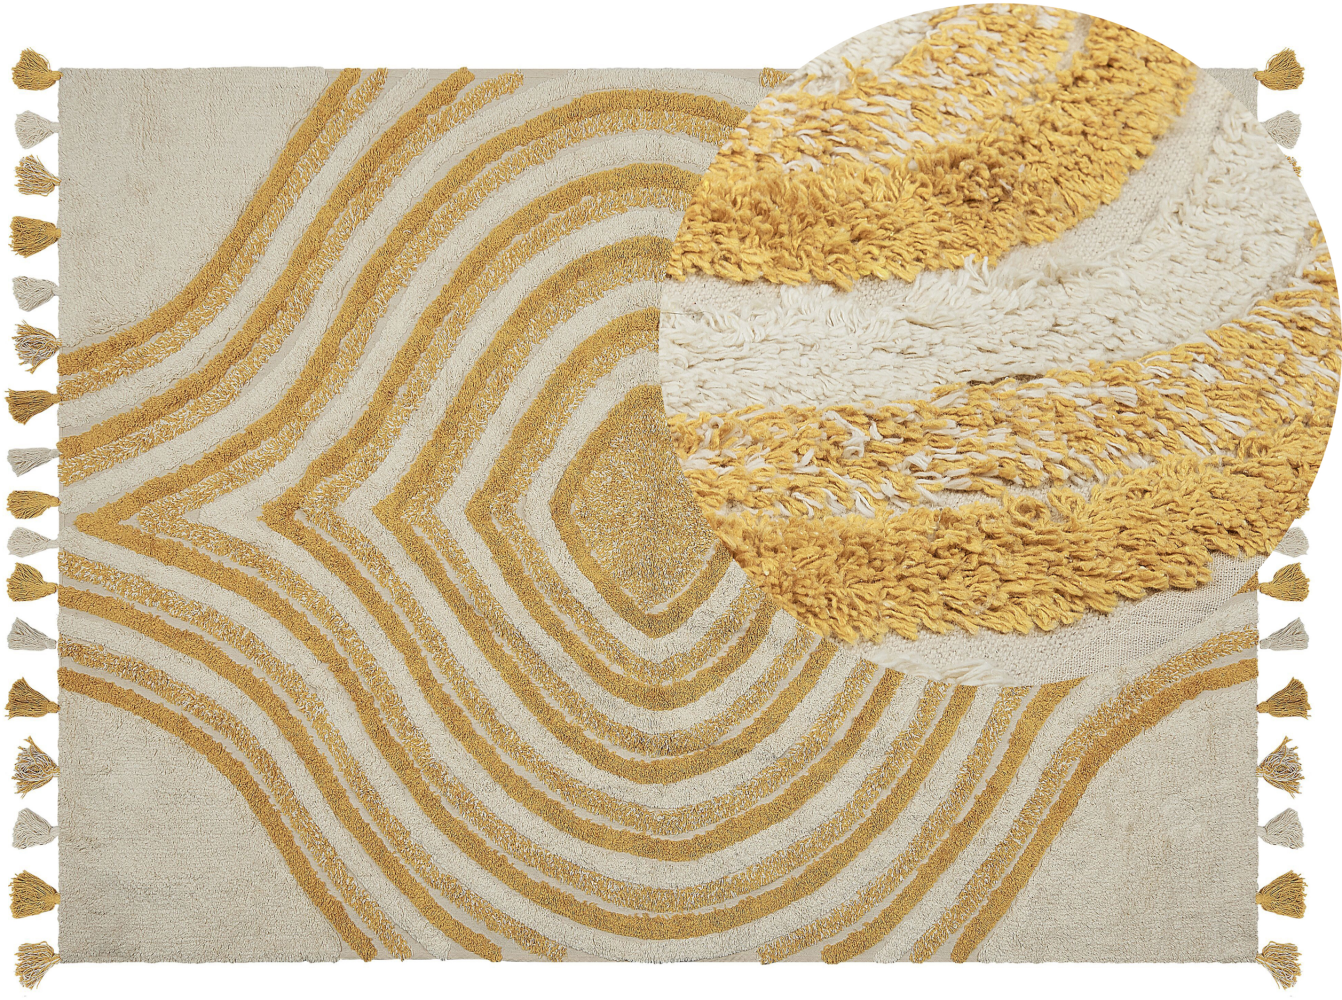 Teppich Baumwolle beige gelb 140 x 200 cm abstraktes Muster BINGOL Bild 1